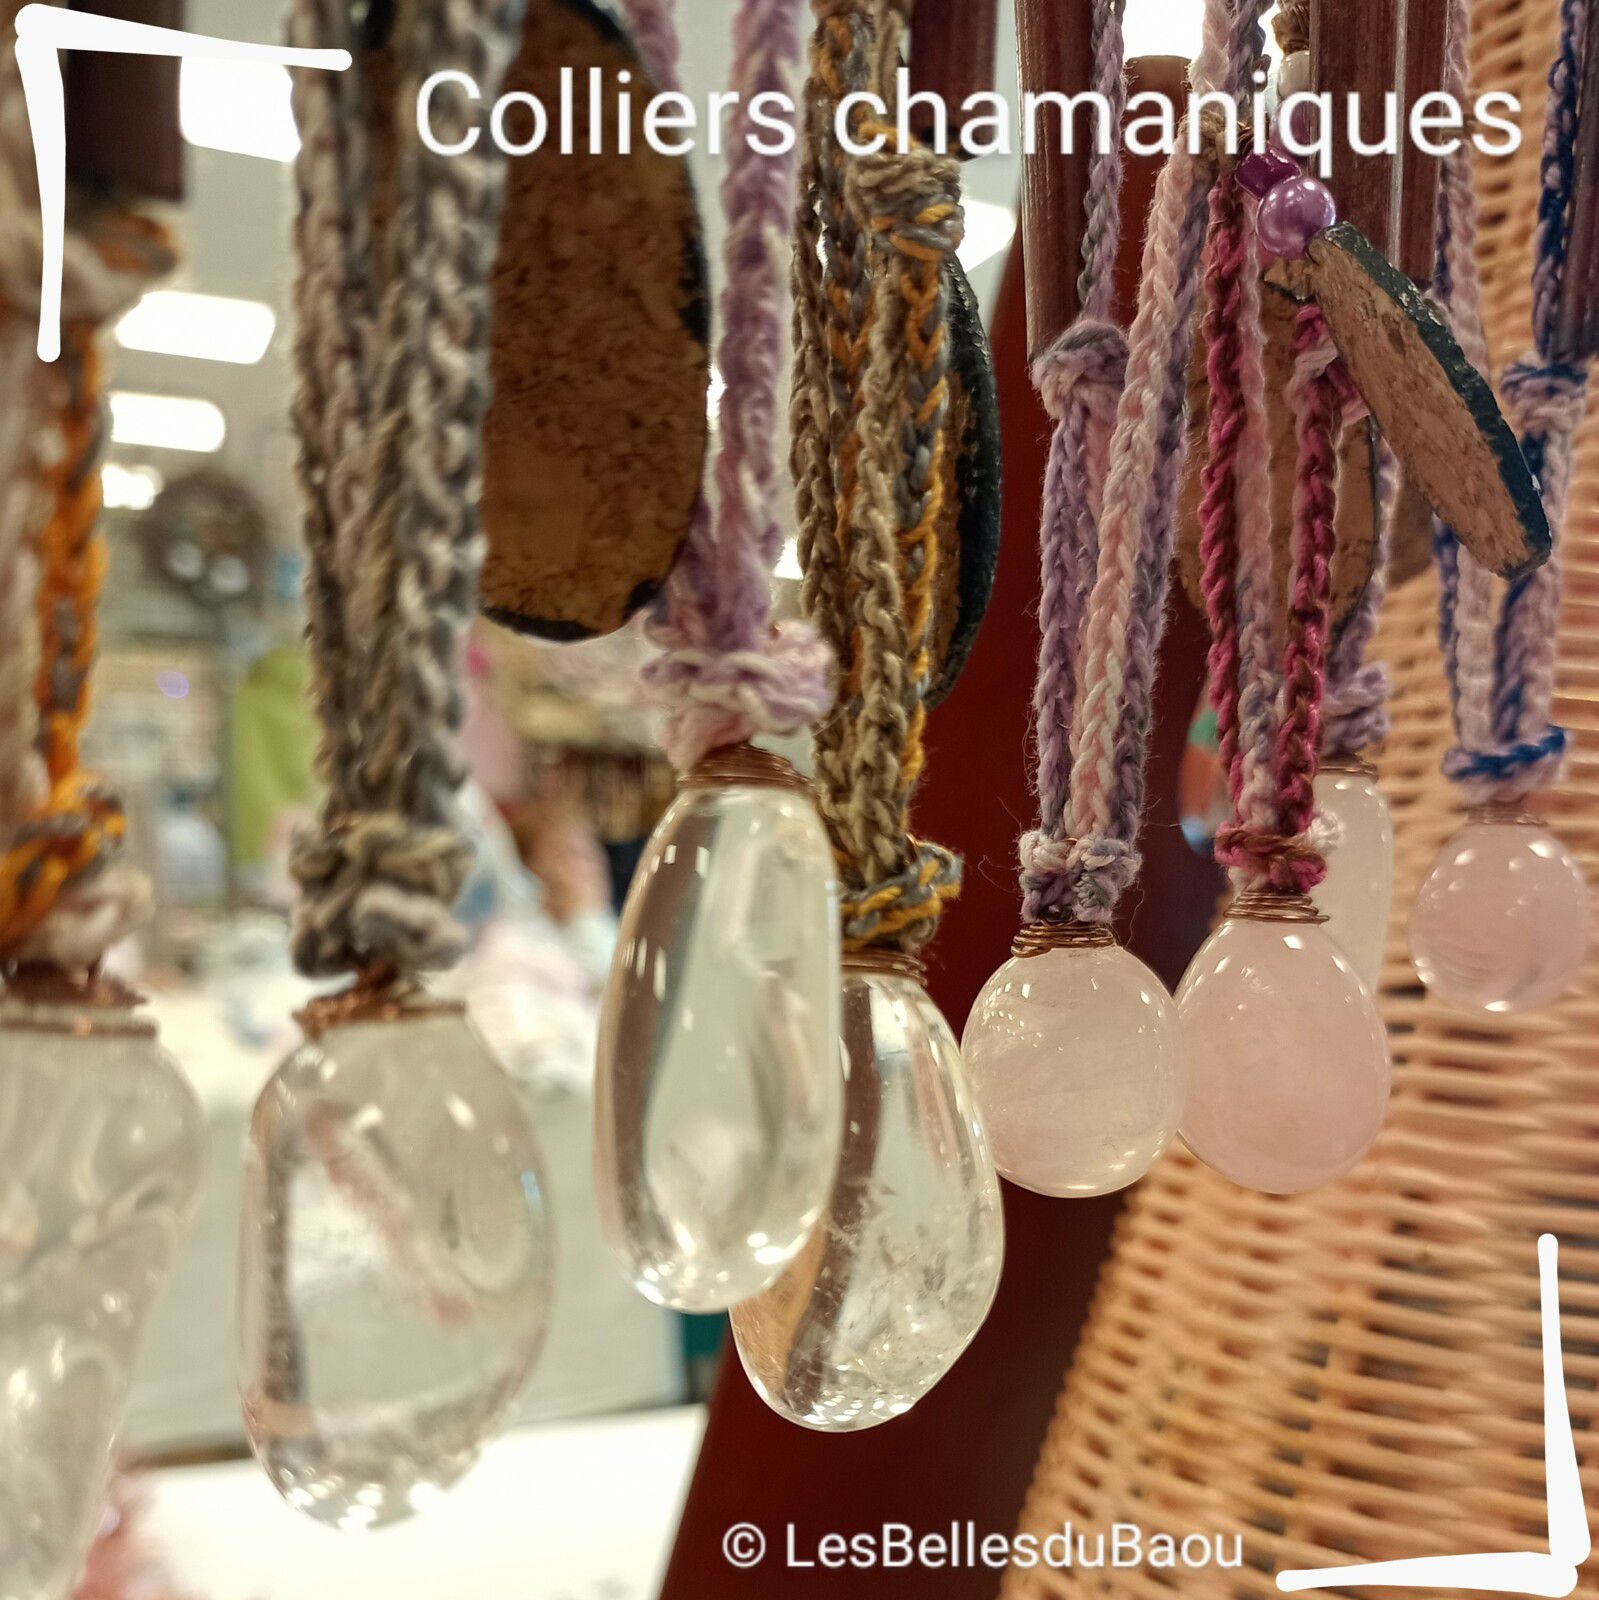 #collierschamaniques #bijouxliège #bijoucréateur #bijouboheme #bijouartisanal #bijouxpiècesuniques #Trèbes #Carcassonne #Canaldumidi